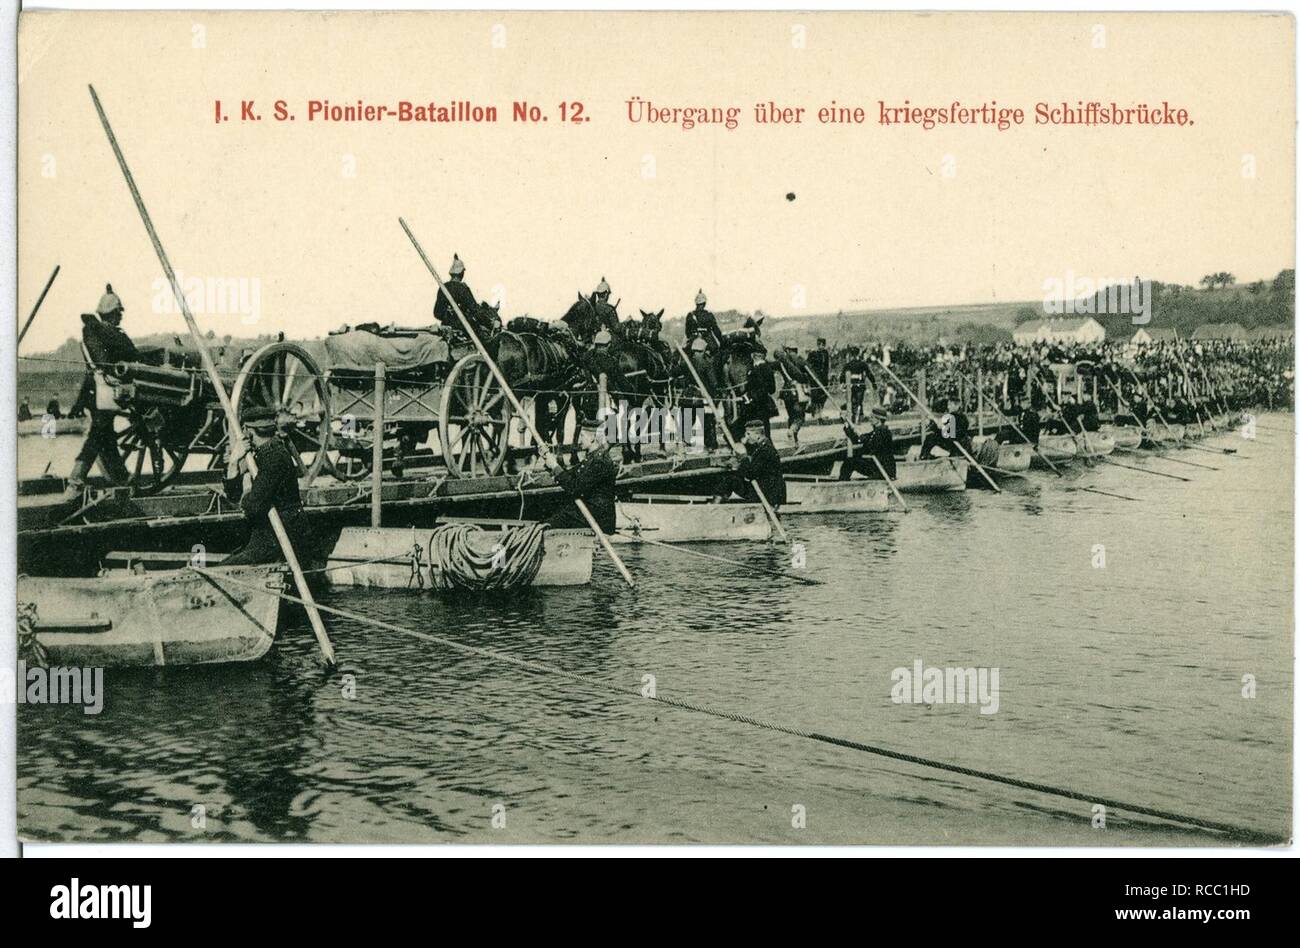 11160--1910-1. Königlich Sächsisches Pionier-Bataillon Nr. 12 - Übergang über eine kriegsfähige Schiffsbrücke- Stock Photo